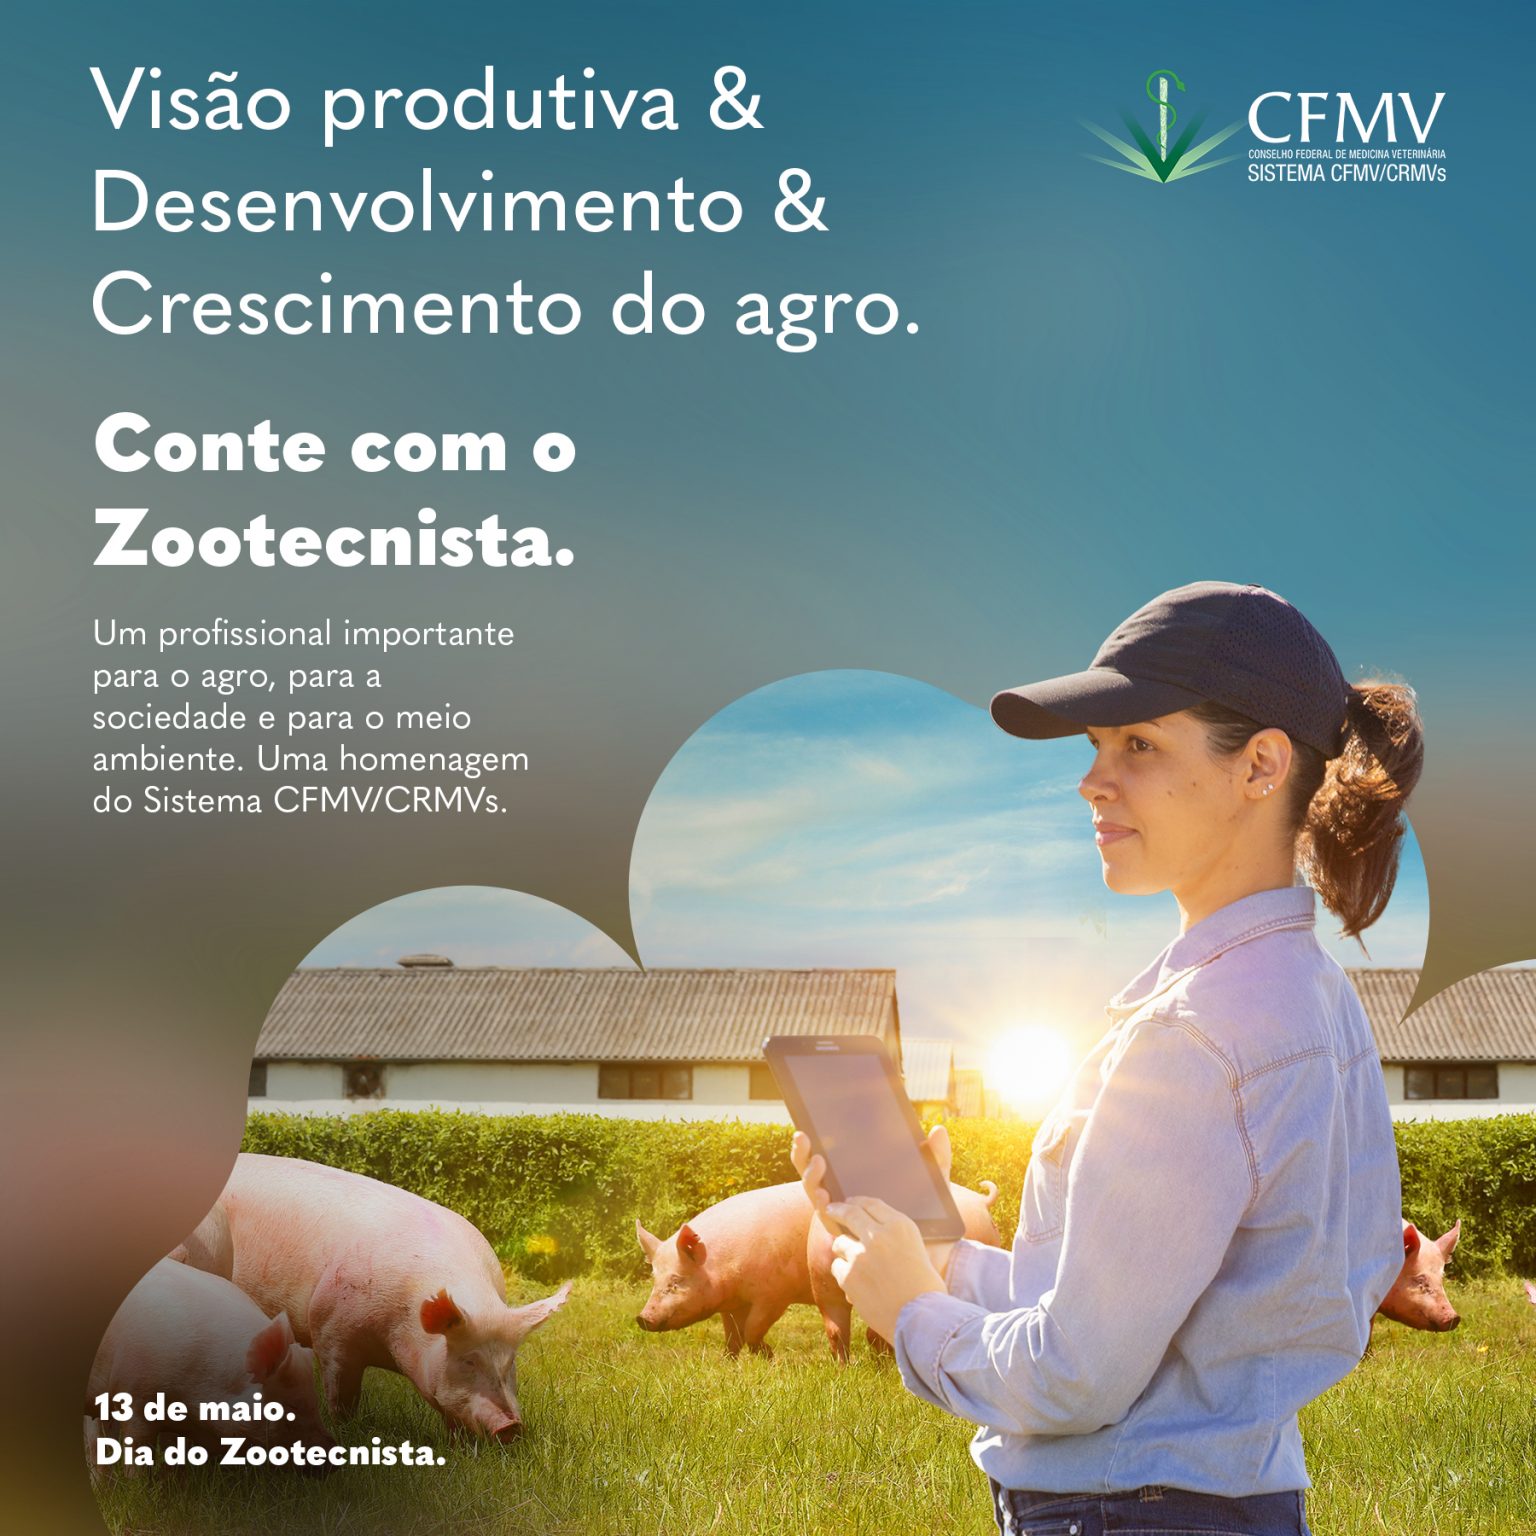 Sistema CFMV/CRMVs lança campanha em homenagem ao Dia do Zootecnista, 13 de maio